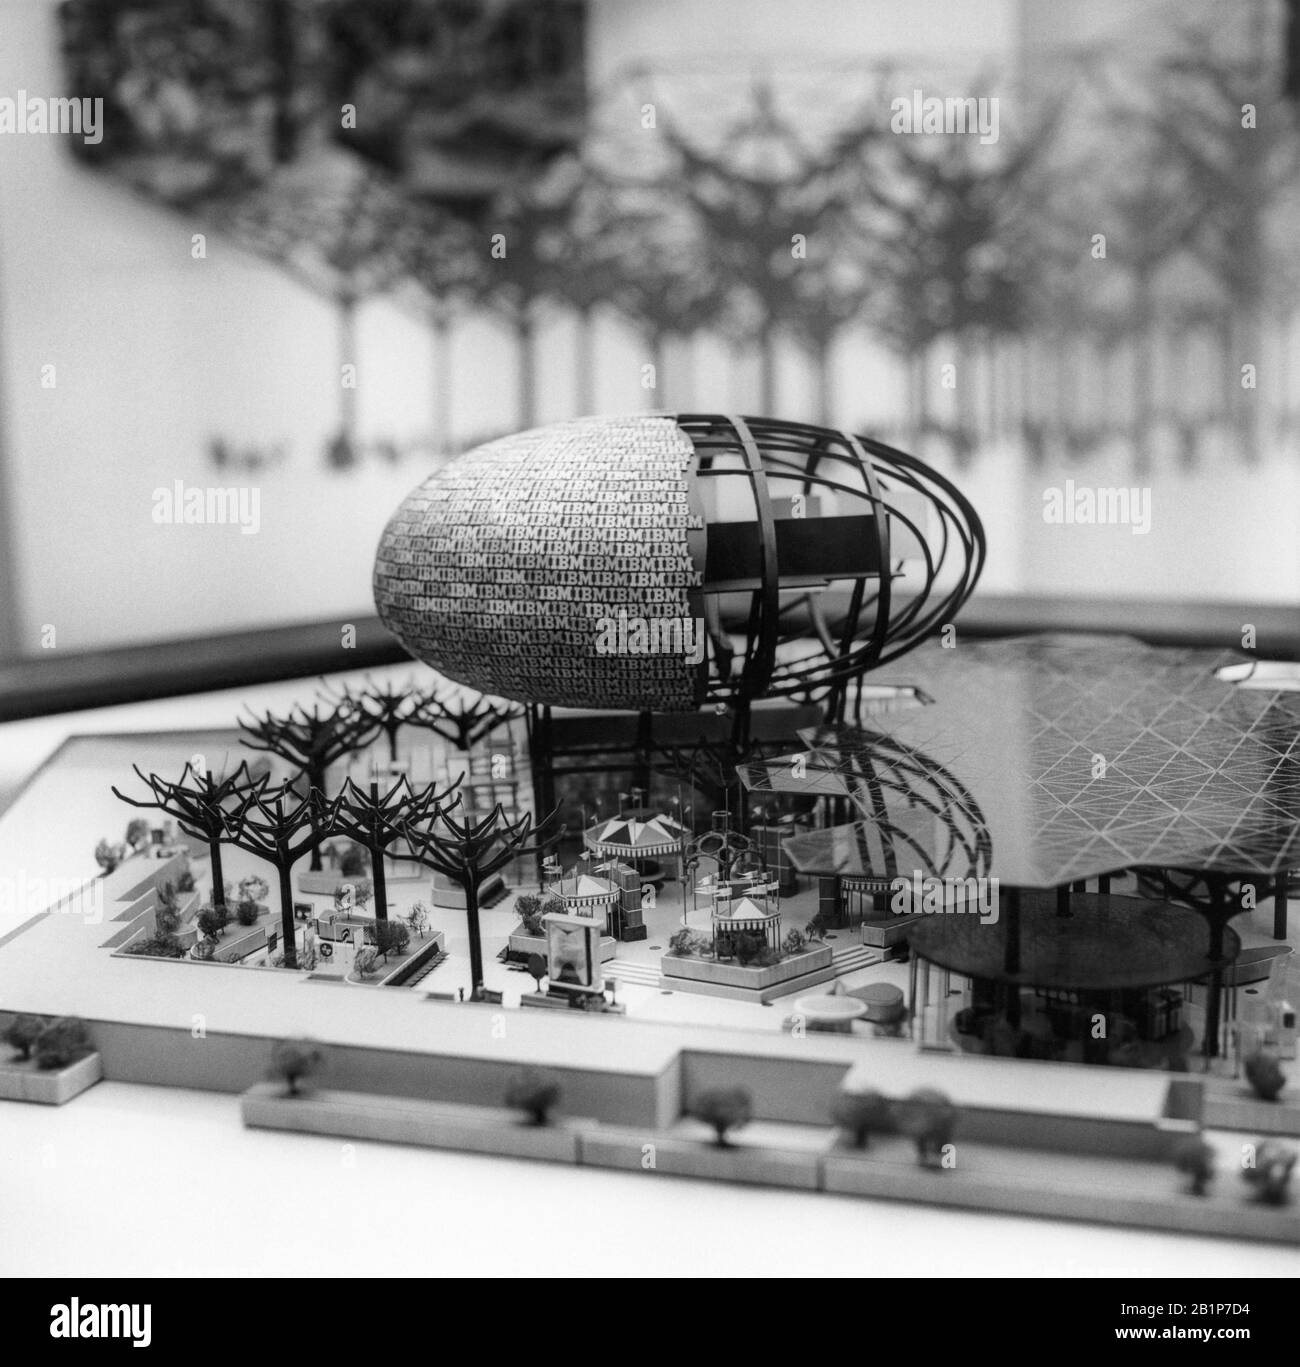 Charles Eames e Eero Saarinen modello di progettazione architettonica del padiglione IBM con alberi d'acciaio artificiali e Ovoid Theatre per la Fiera Mondiale di New York del 1964. Il modello di padiglione è stato esposto all'IBM Business Show di Manhattan al New York Coliseum, circa il 30 aprile 1963. Foto Stock